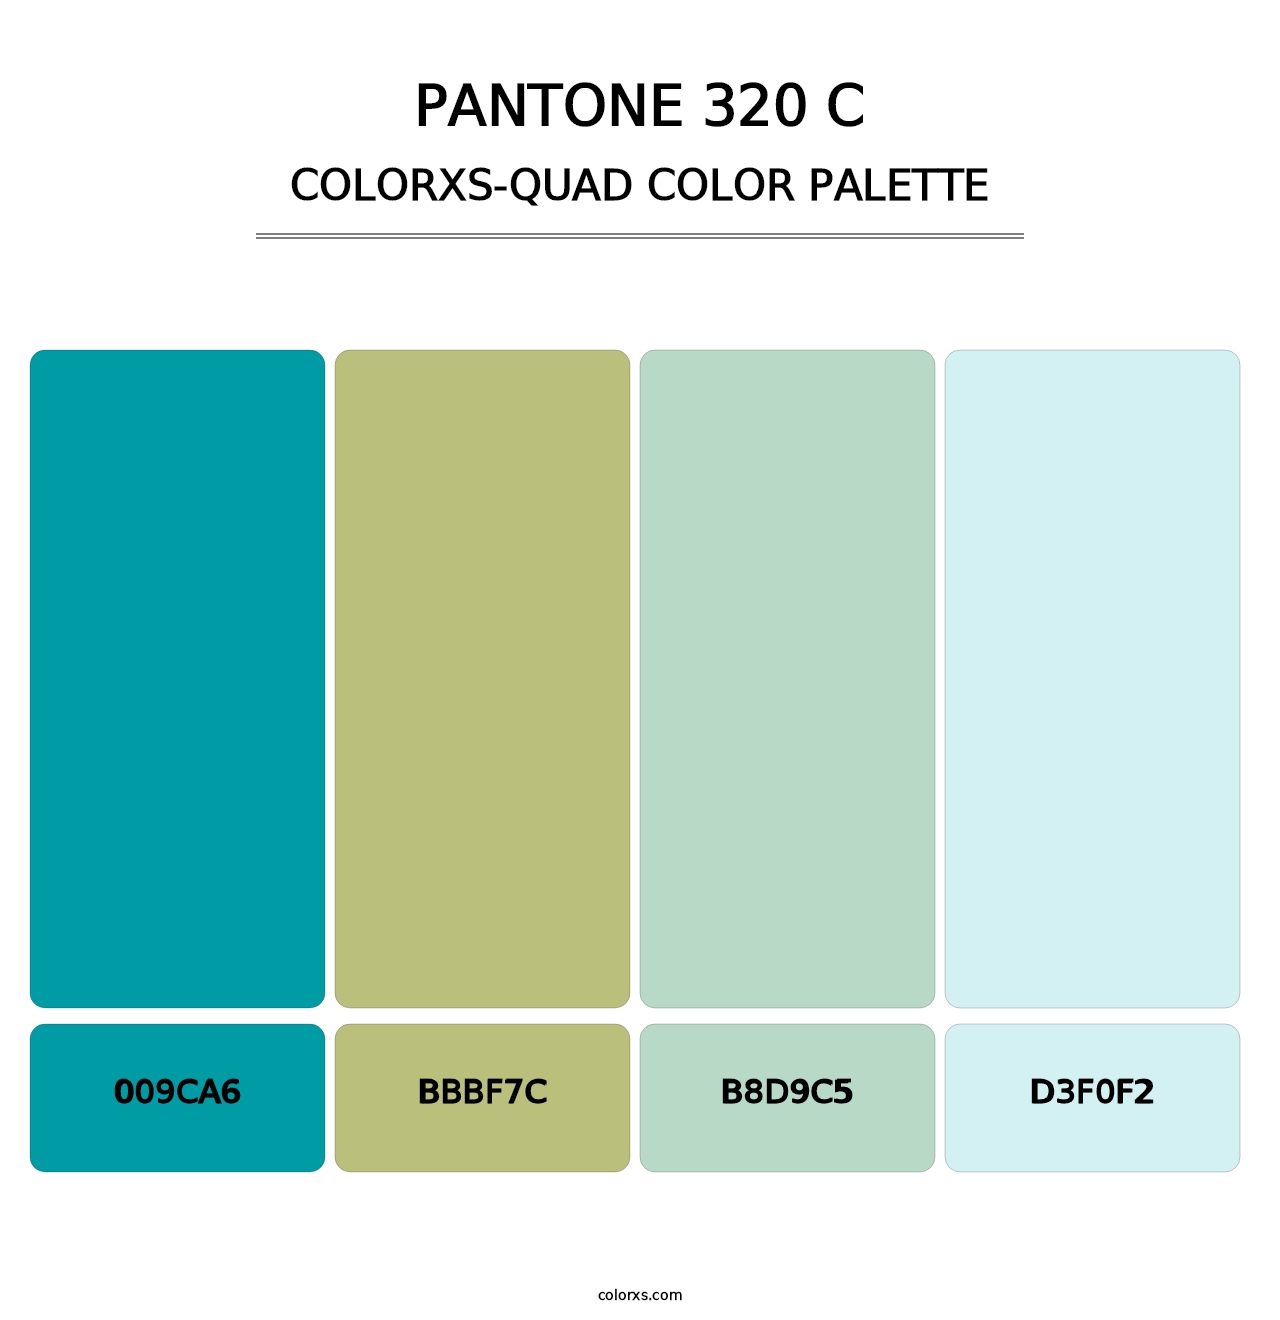 PANTONE 320 C - Colorxs Quad Palette